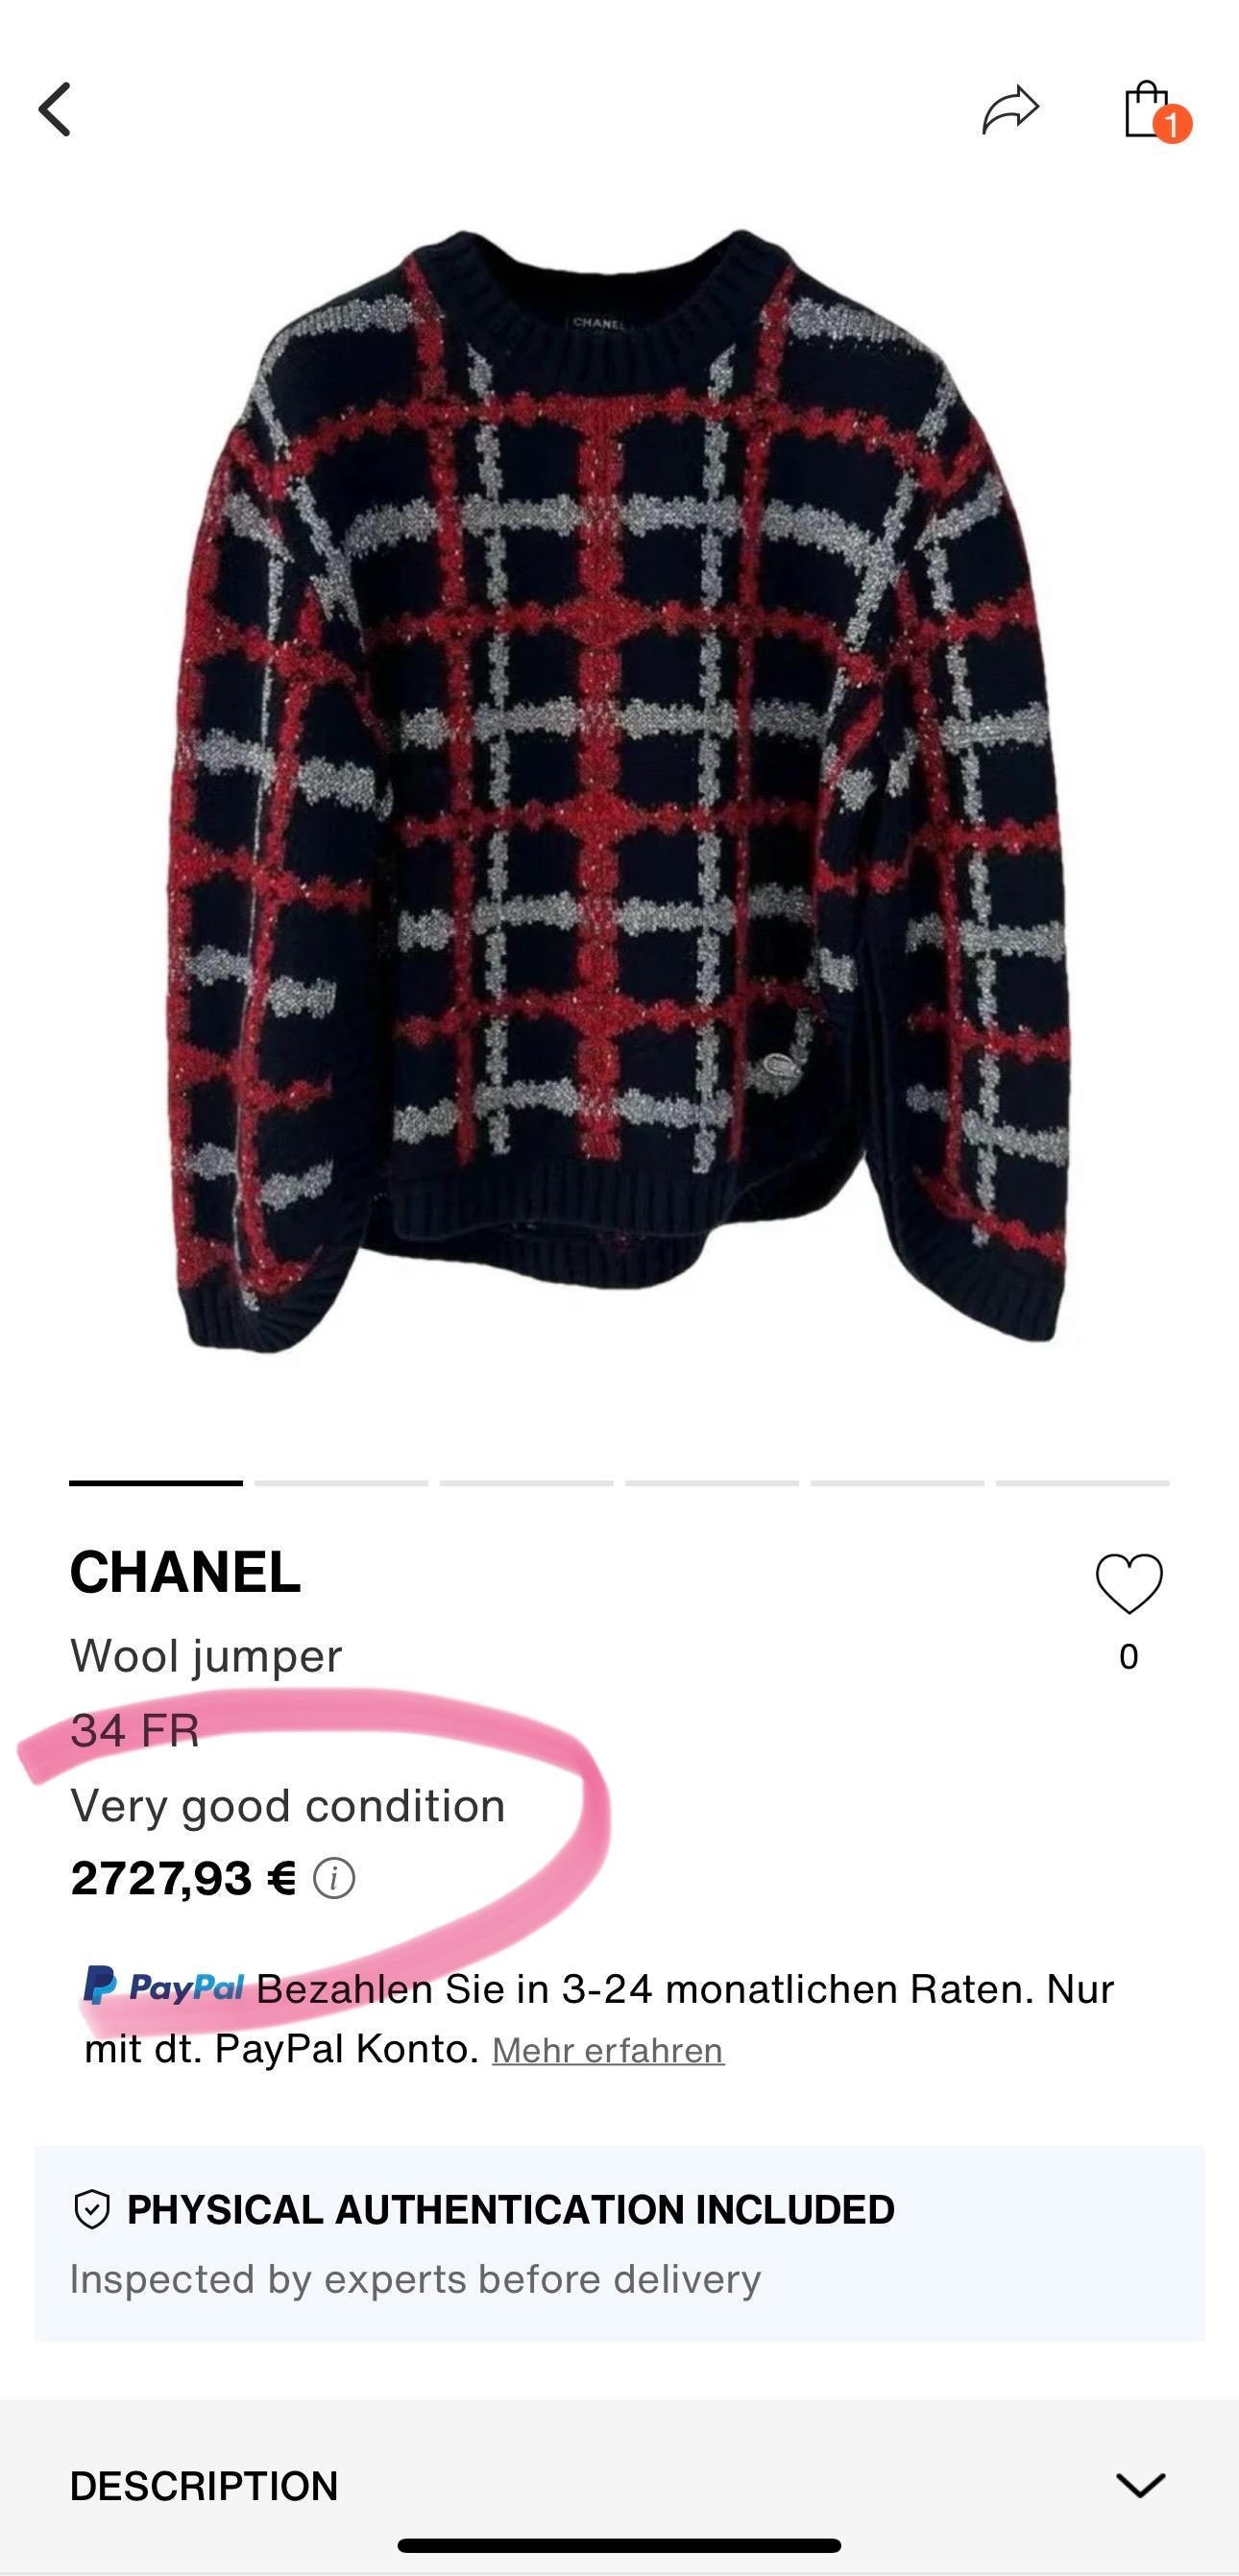 Charmant et confortable pull en laine et cachemire Chanel de la Collection AIRPORT de Karl Lagerfeld.
- Breloque du logo CC à la taille
Taille 36 FR. Jamais porté.